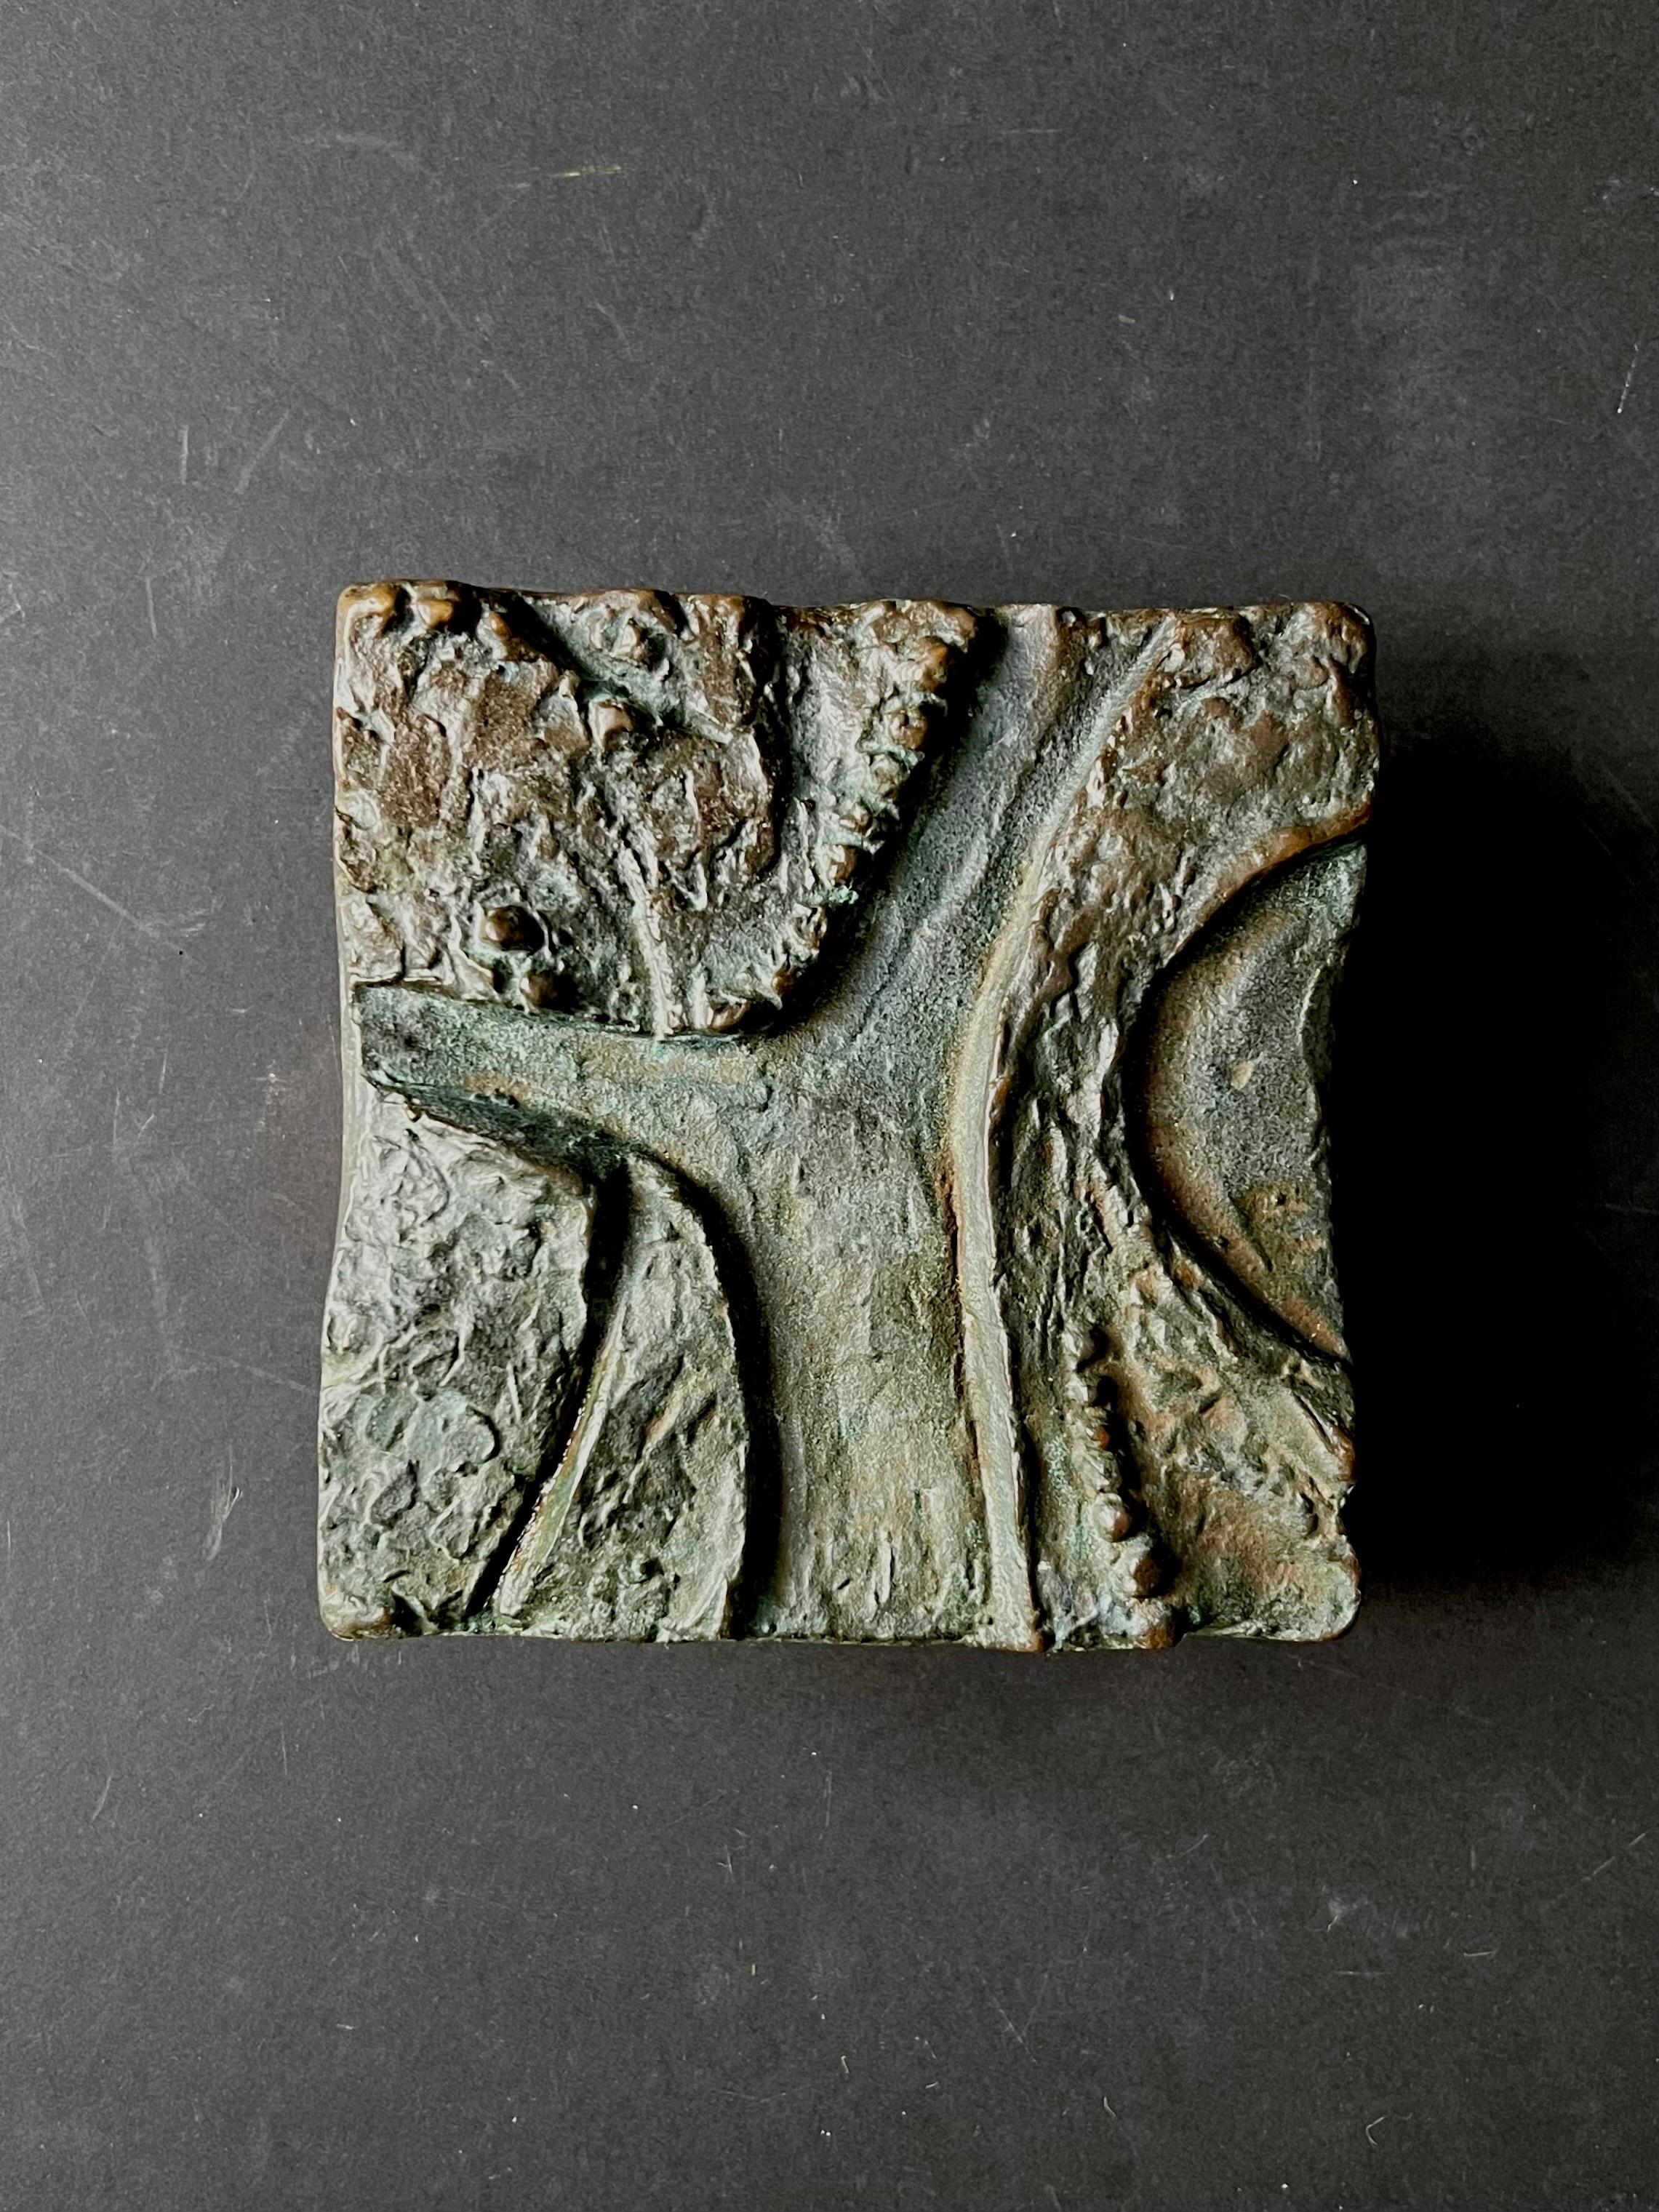 Poignée de porte carrée en bronze moulé, avec un motif abstrait en relief. Design/One du 20e siècle, trouvé en Allemagne.

La pièce est en bon état vintage avec une patine brun foncé sur le métal. Il présente des signes d'usure liés à l'âge et à